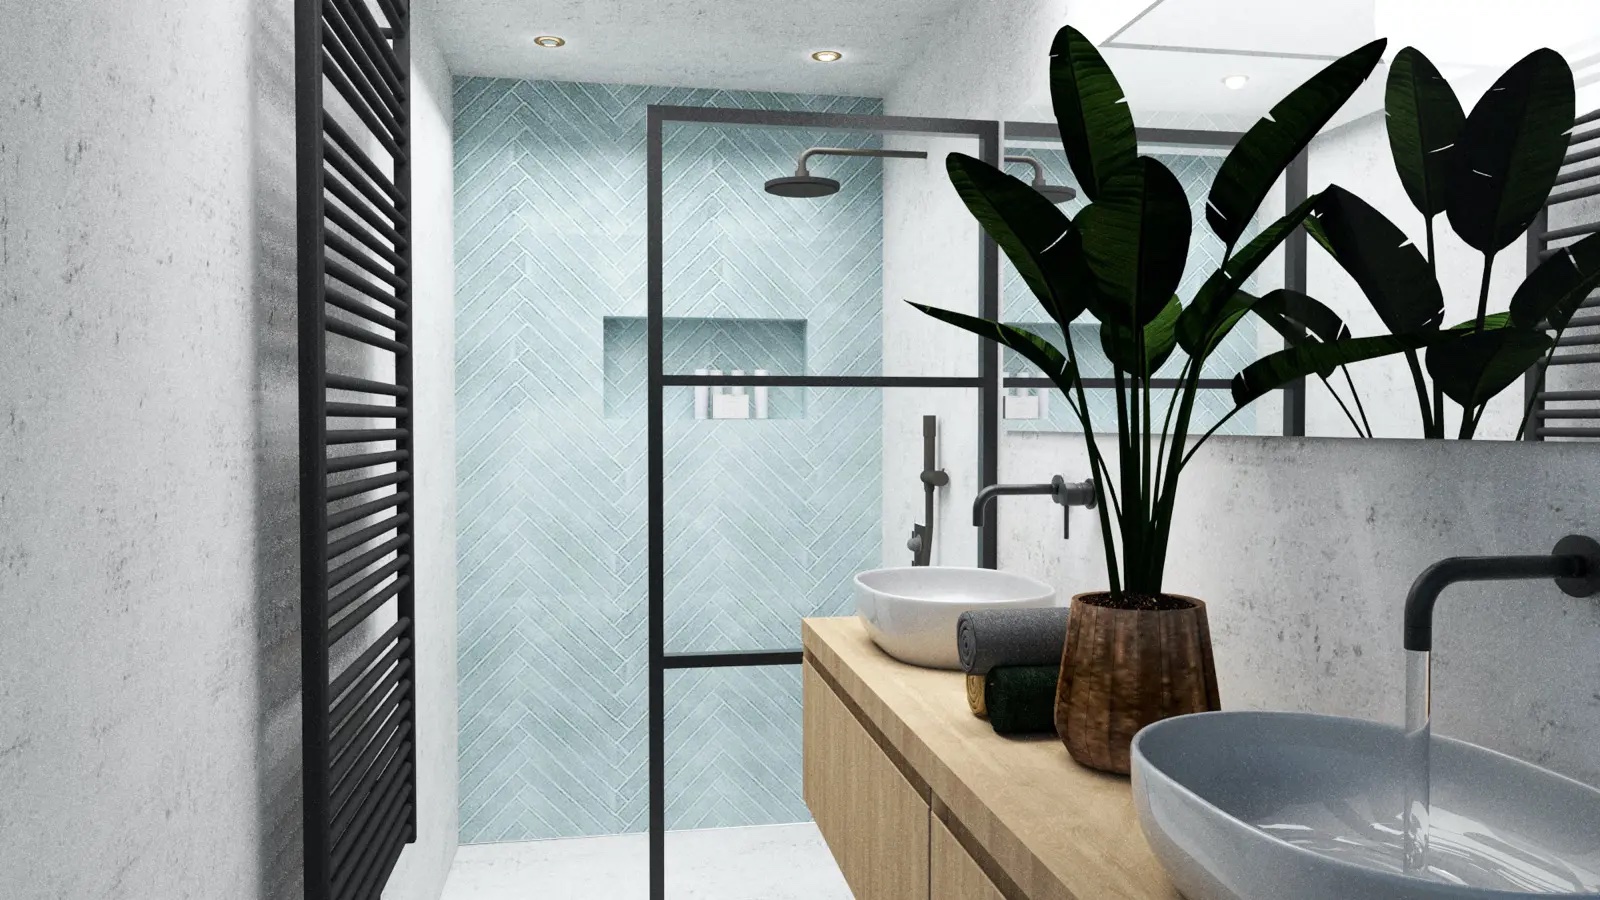 De nieuwste badkamertrends van 2022 #badkamer #badkamertrends #badkamerinspiratie #verbouwen